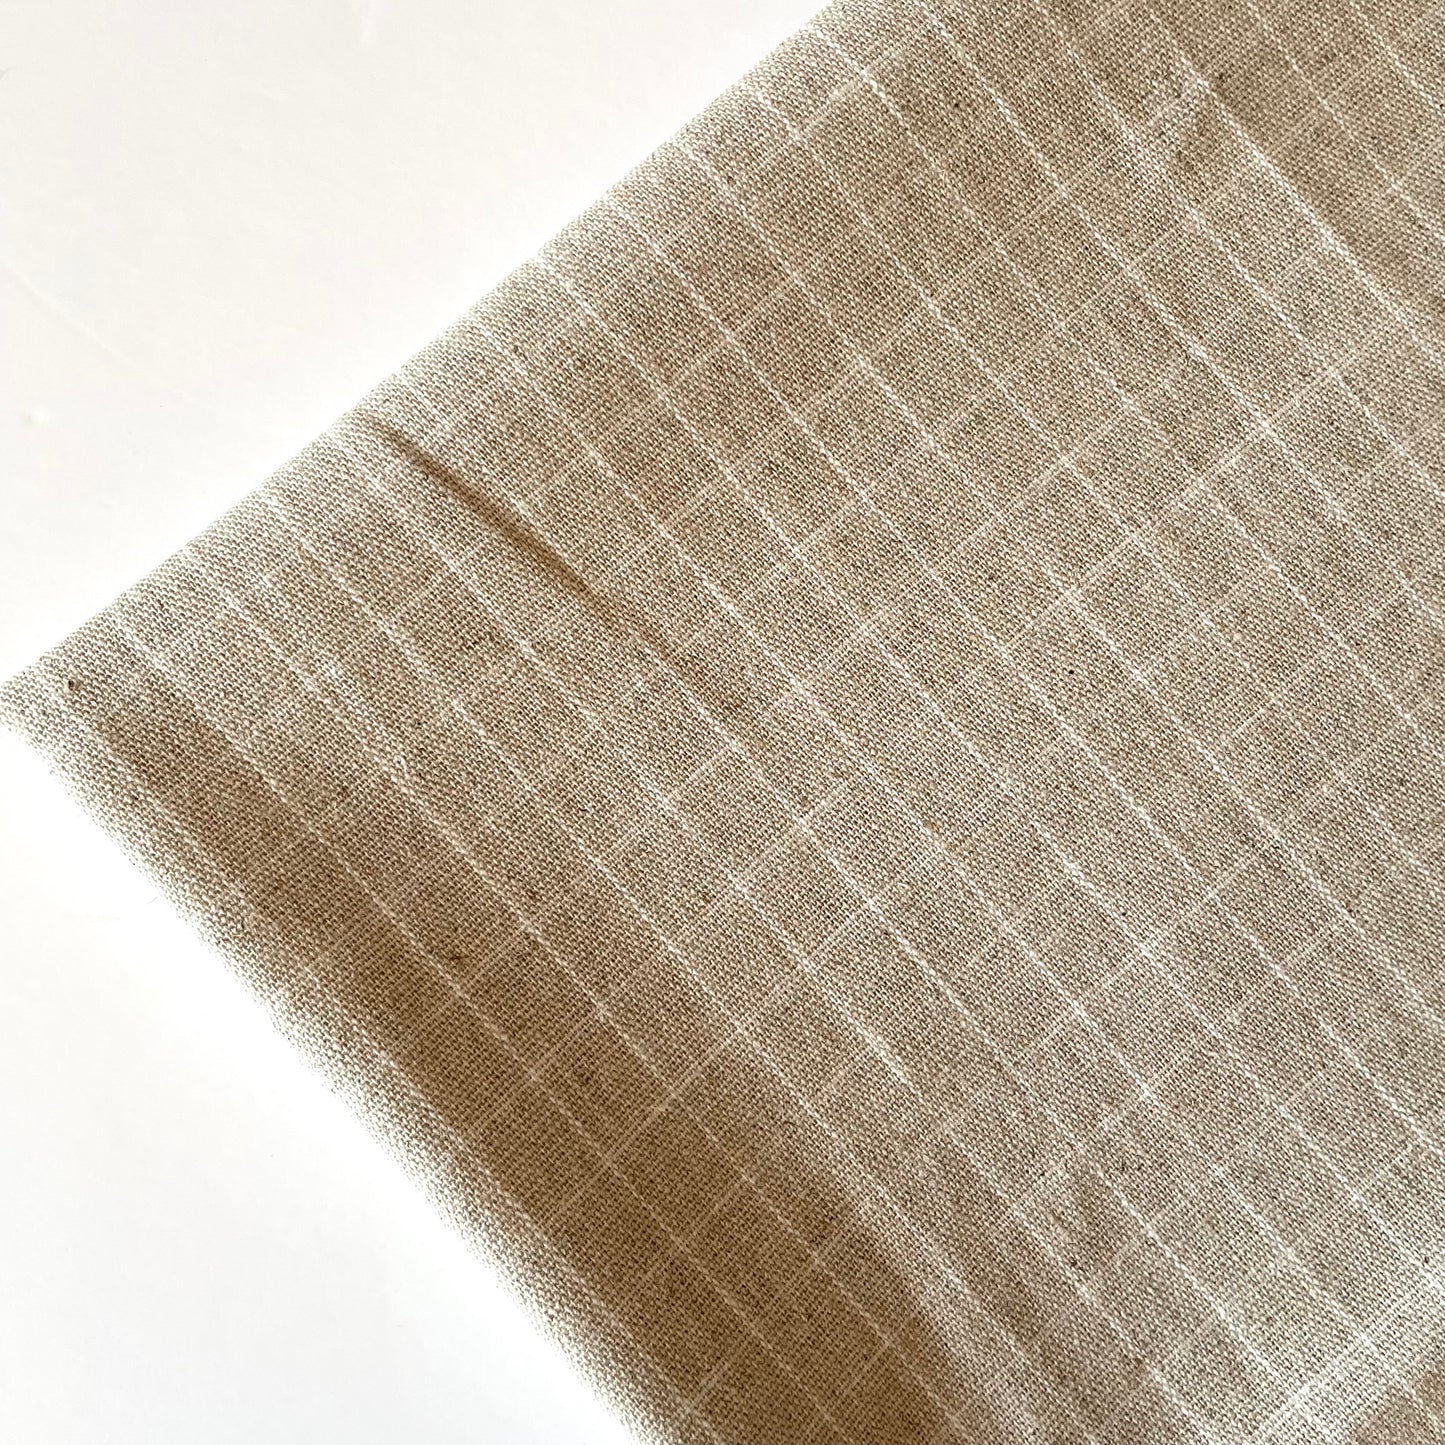 Yarn Dye - white check (natural)